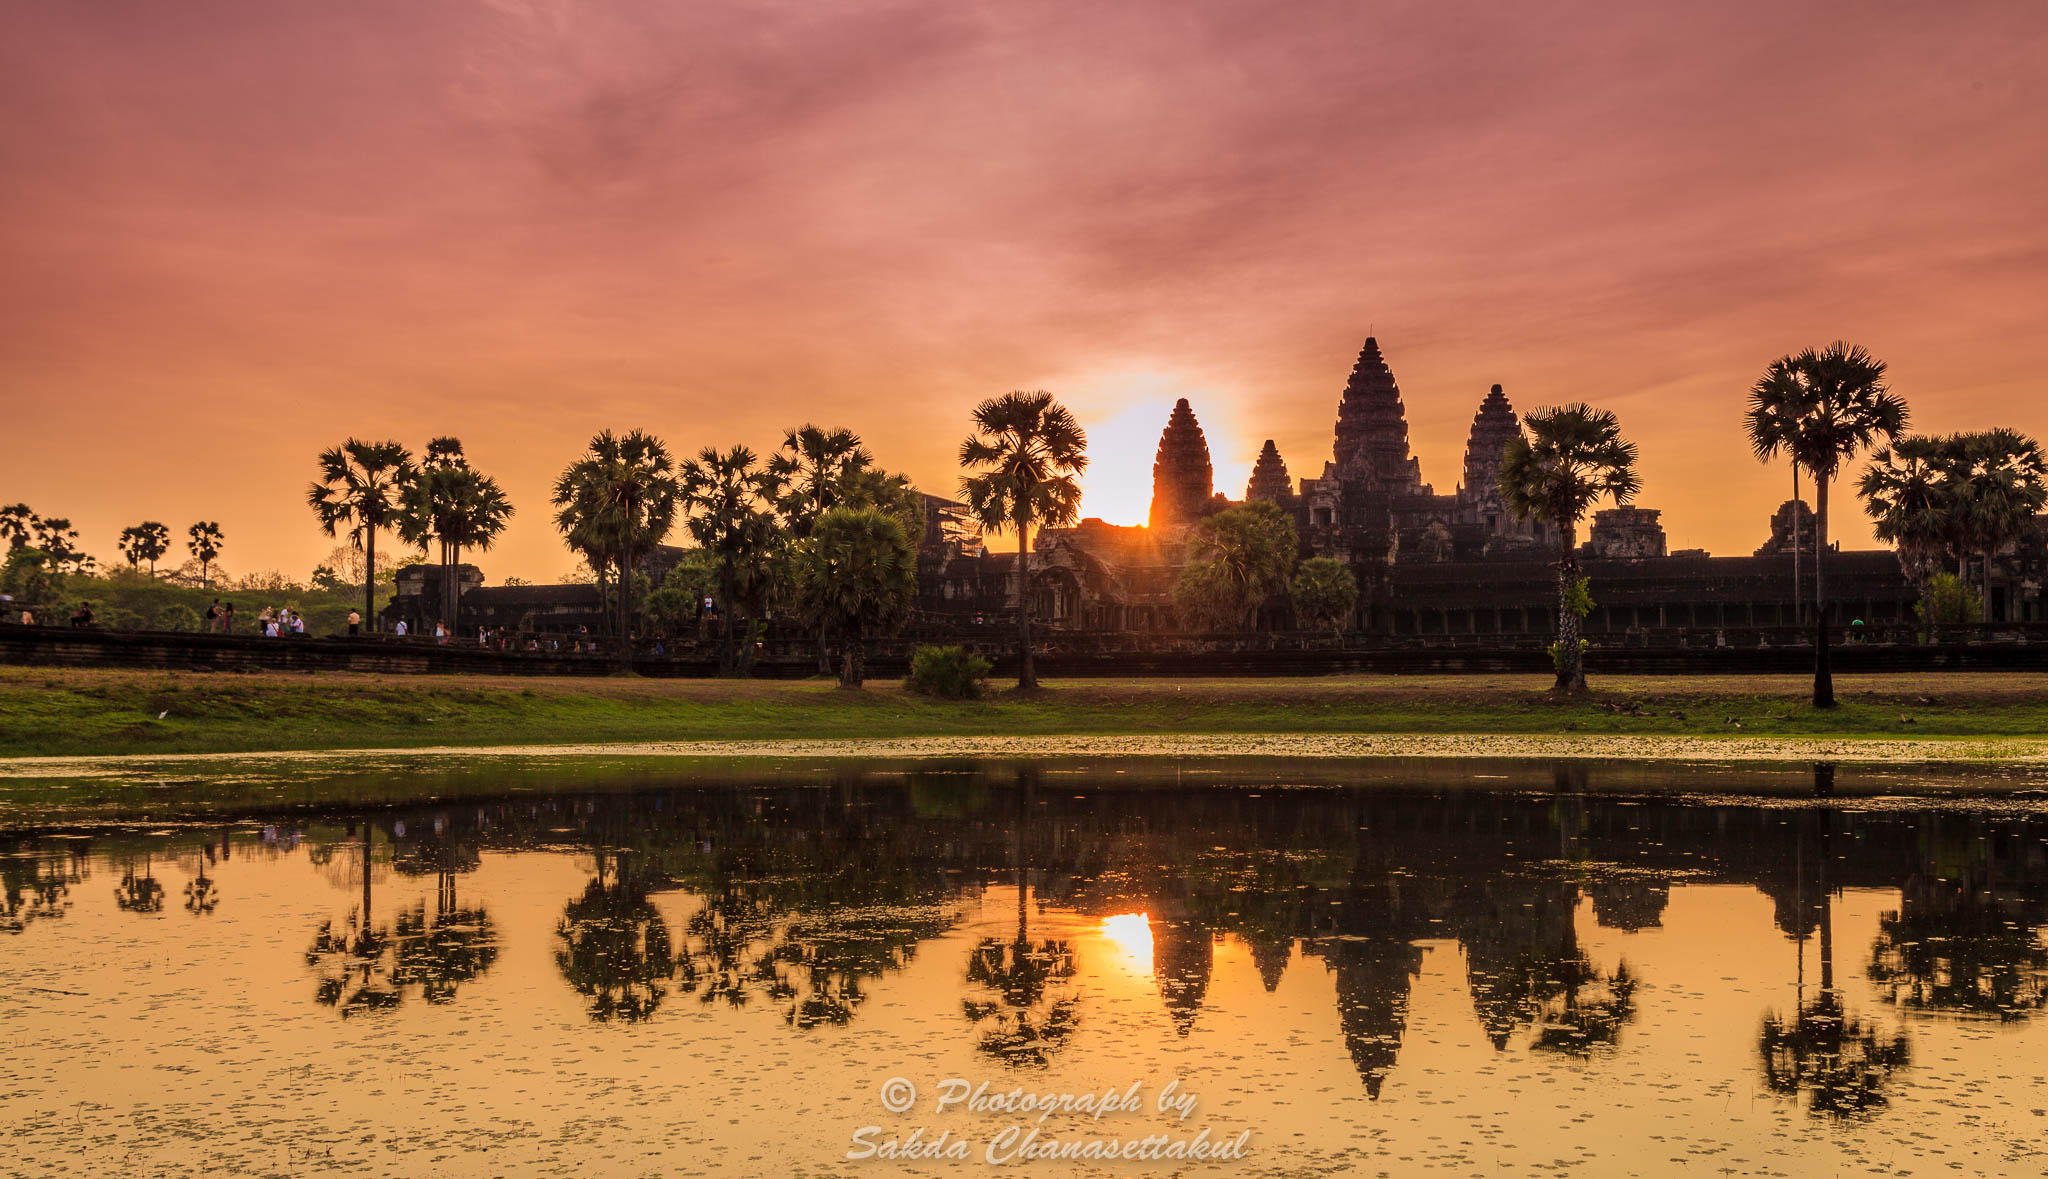 Angkorwat,นครวัด,พระอาทิตย์ขึ้น